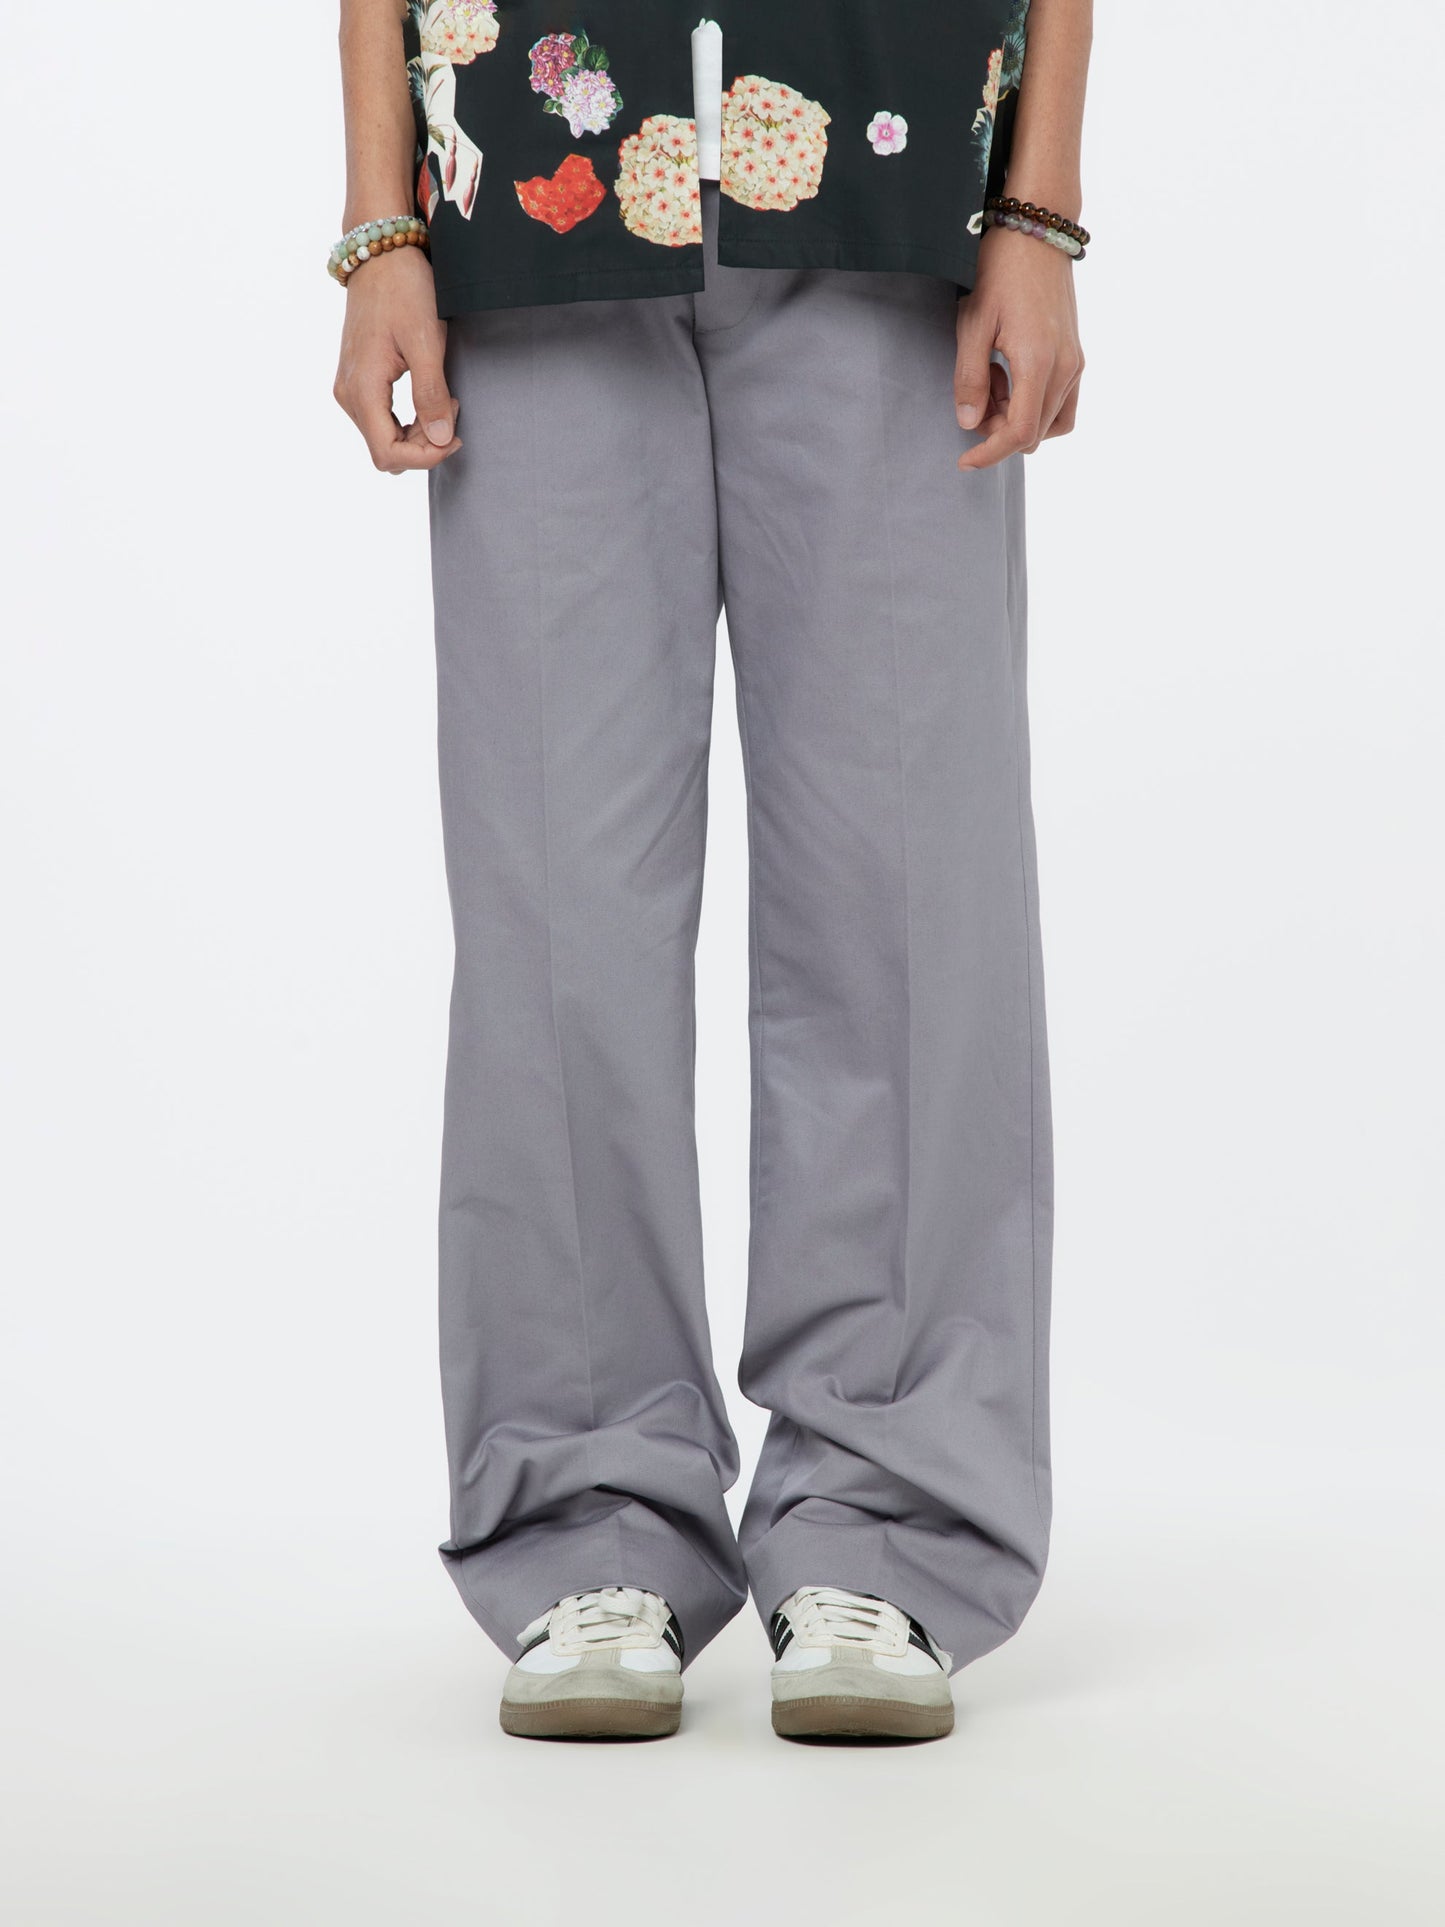 Leather Lace Chino Pants (Mercury)